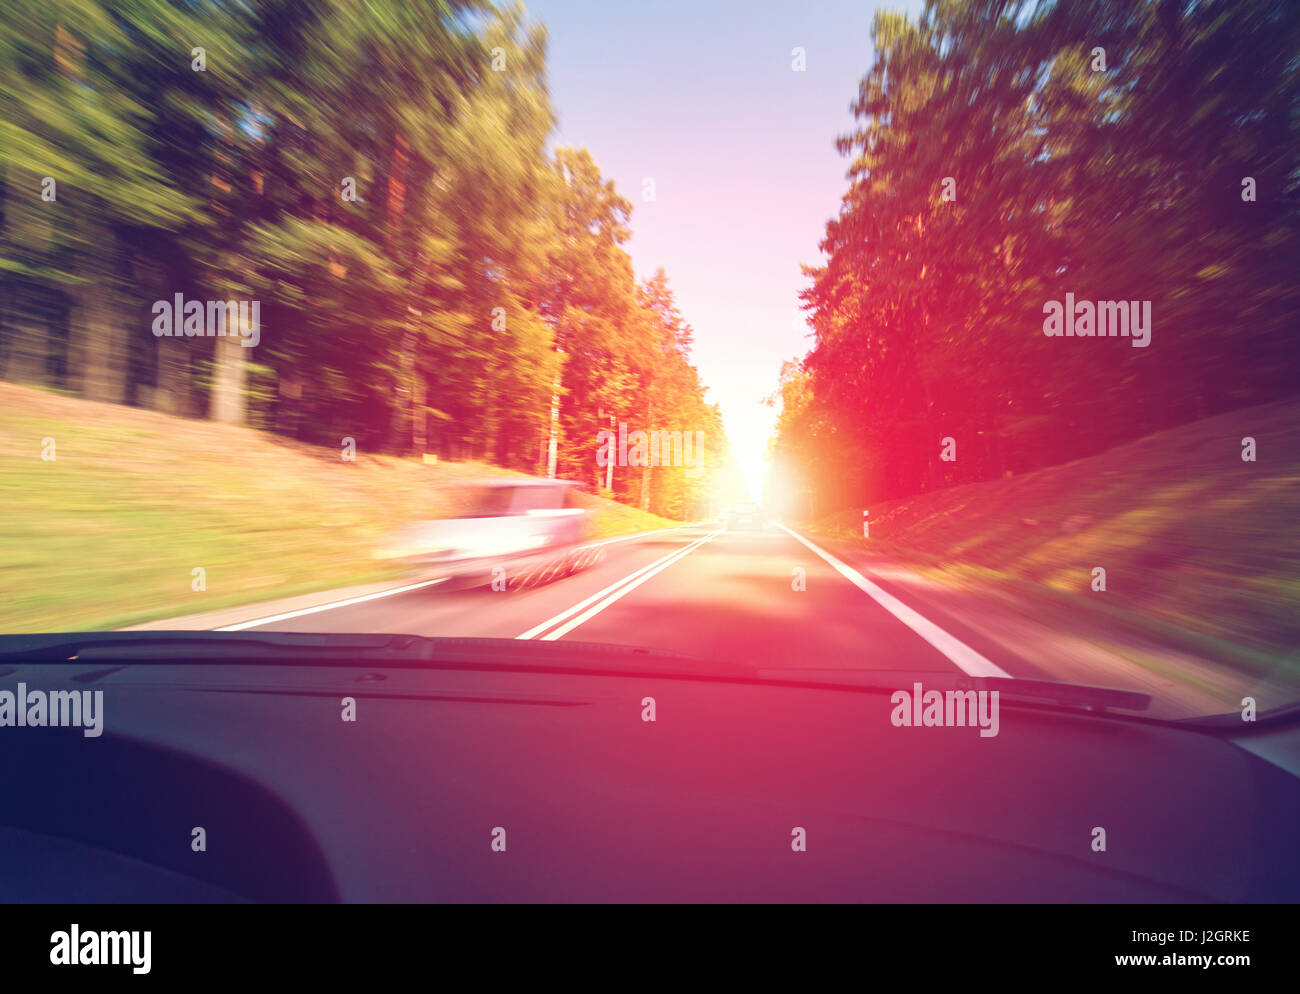 La conduite d'une voiture le matin au lever du soleil dans de bonnes conditions météorologiques Banque D'Images